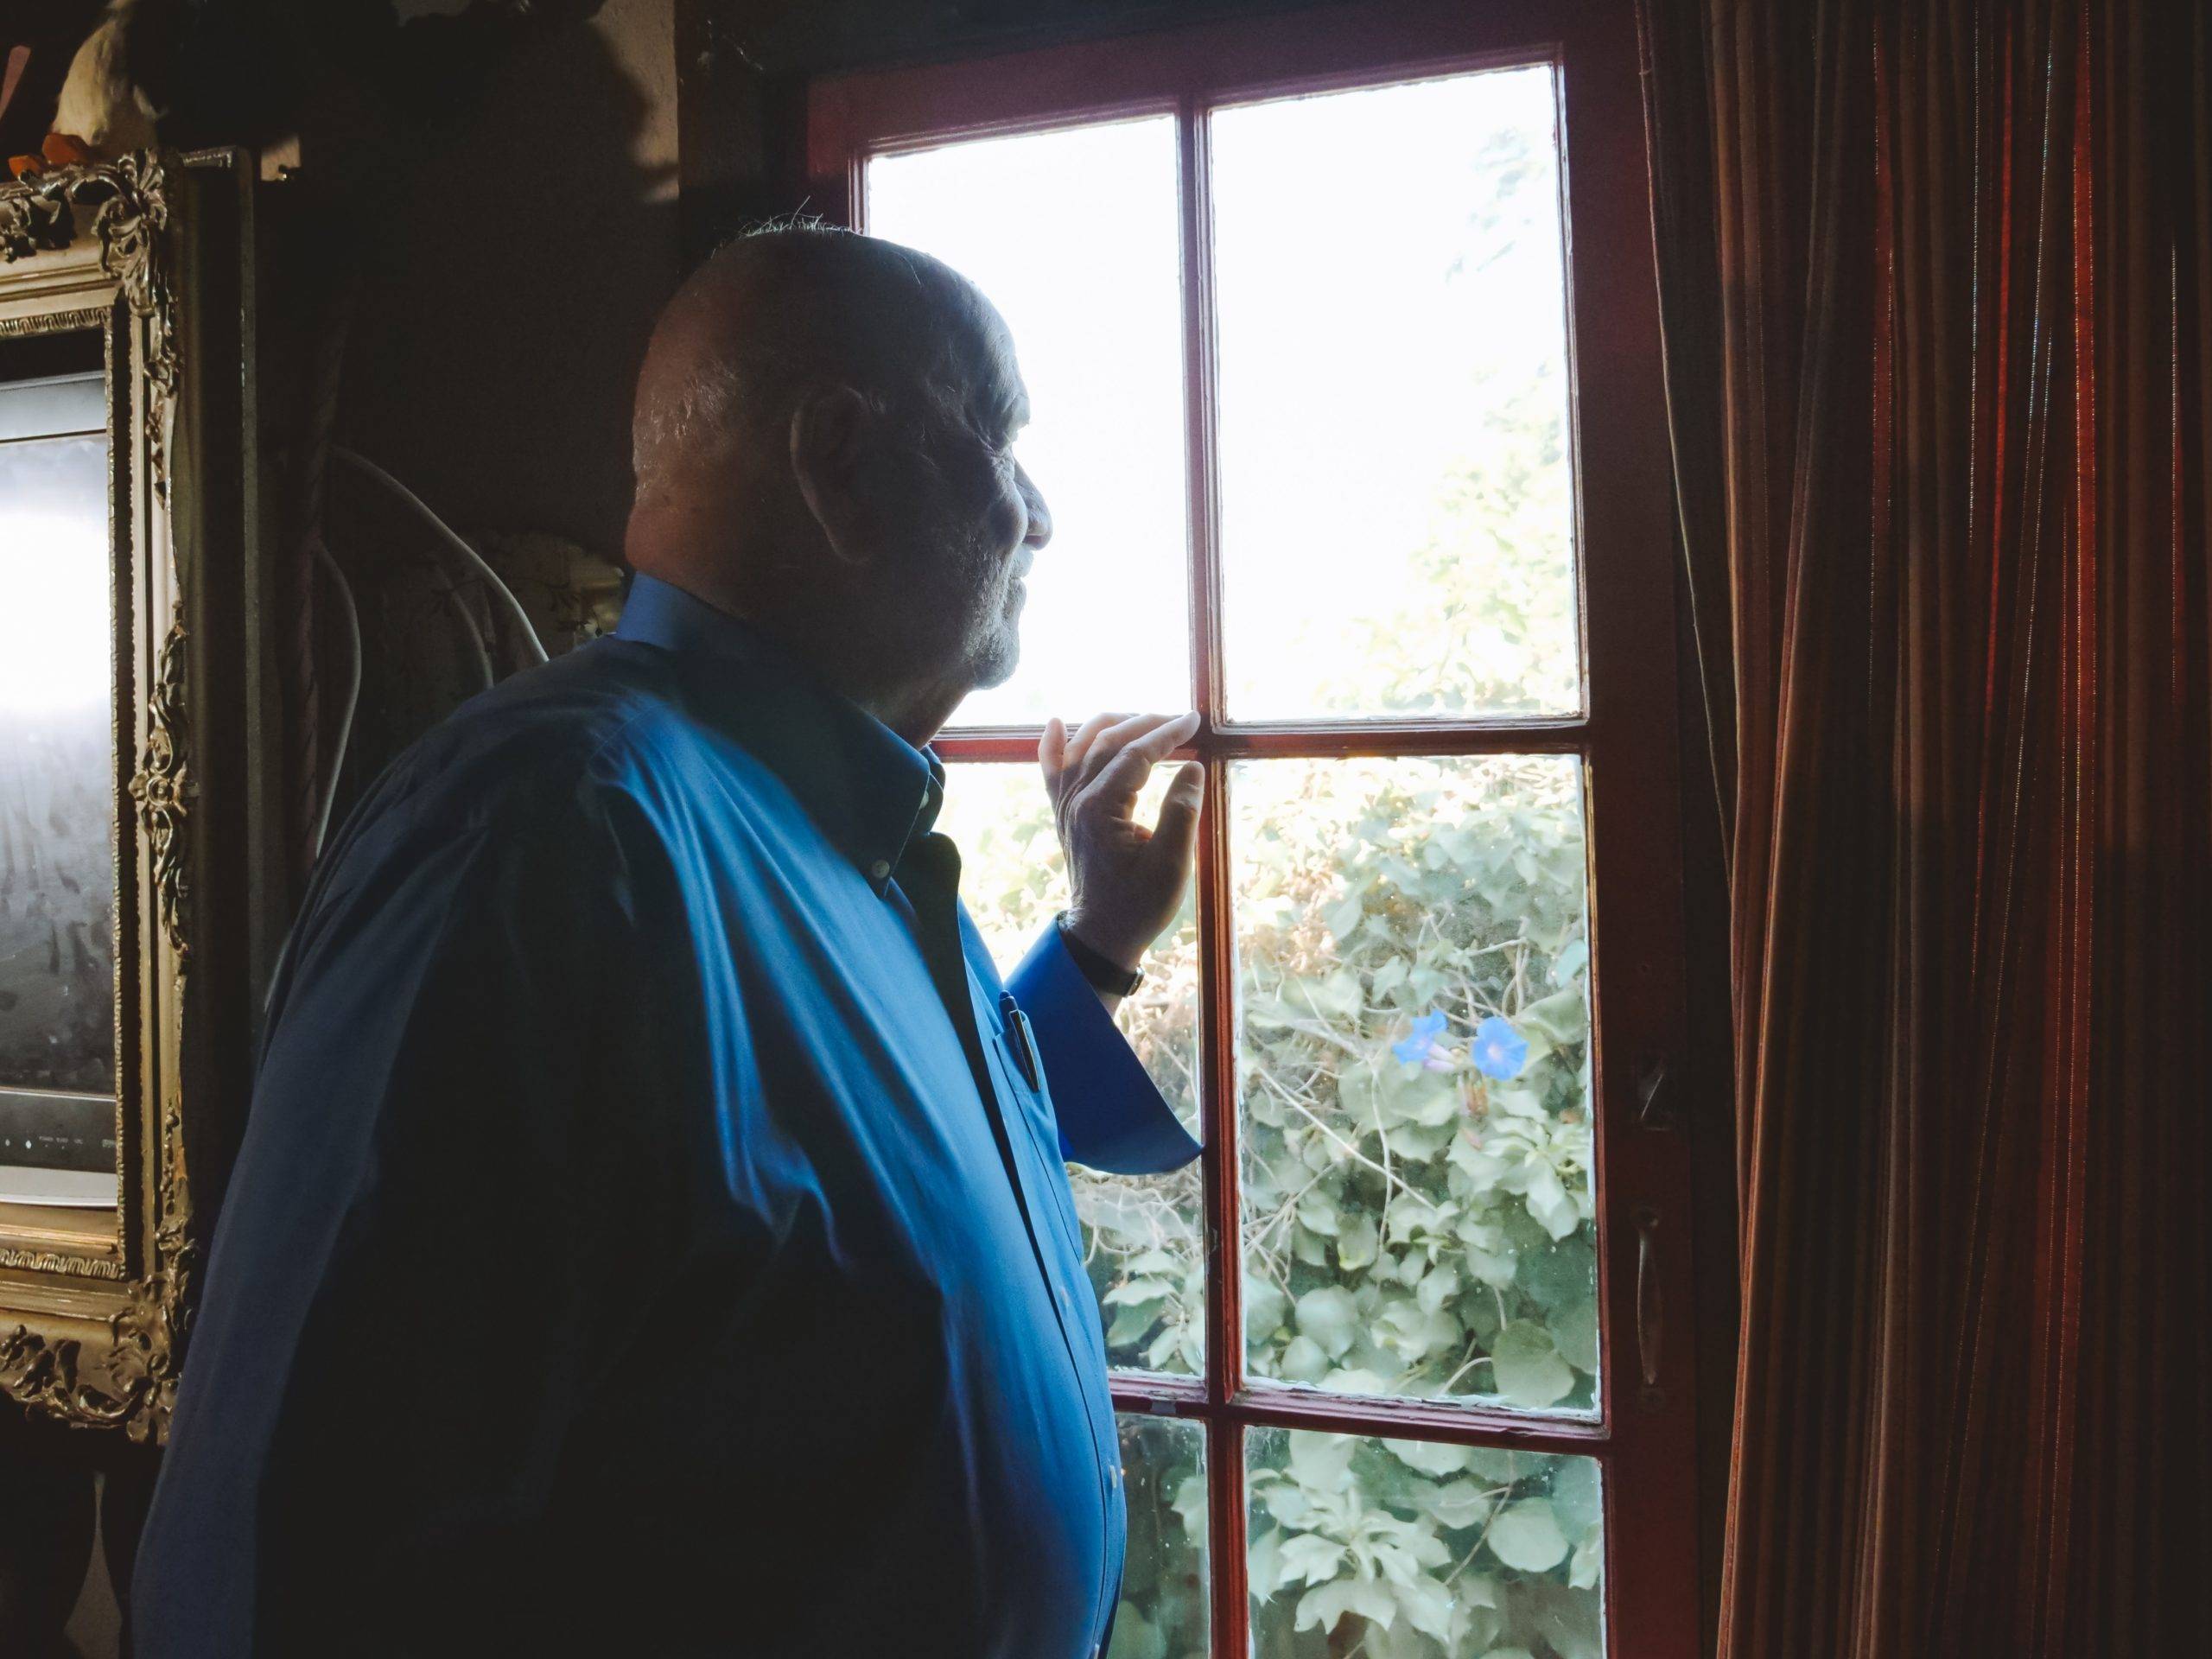 Elderly man looks out window